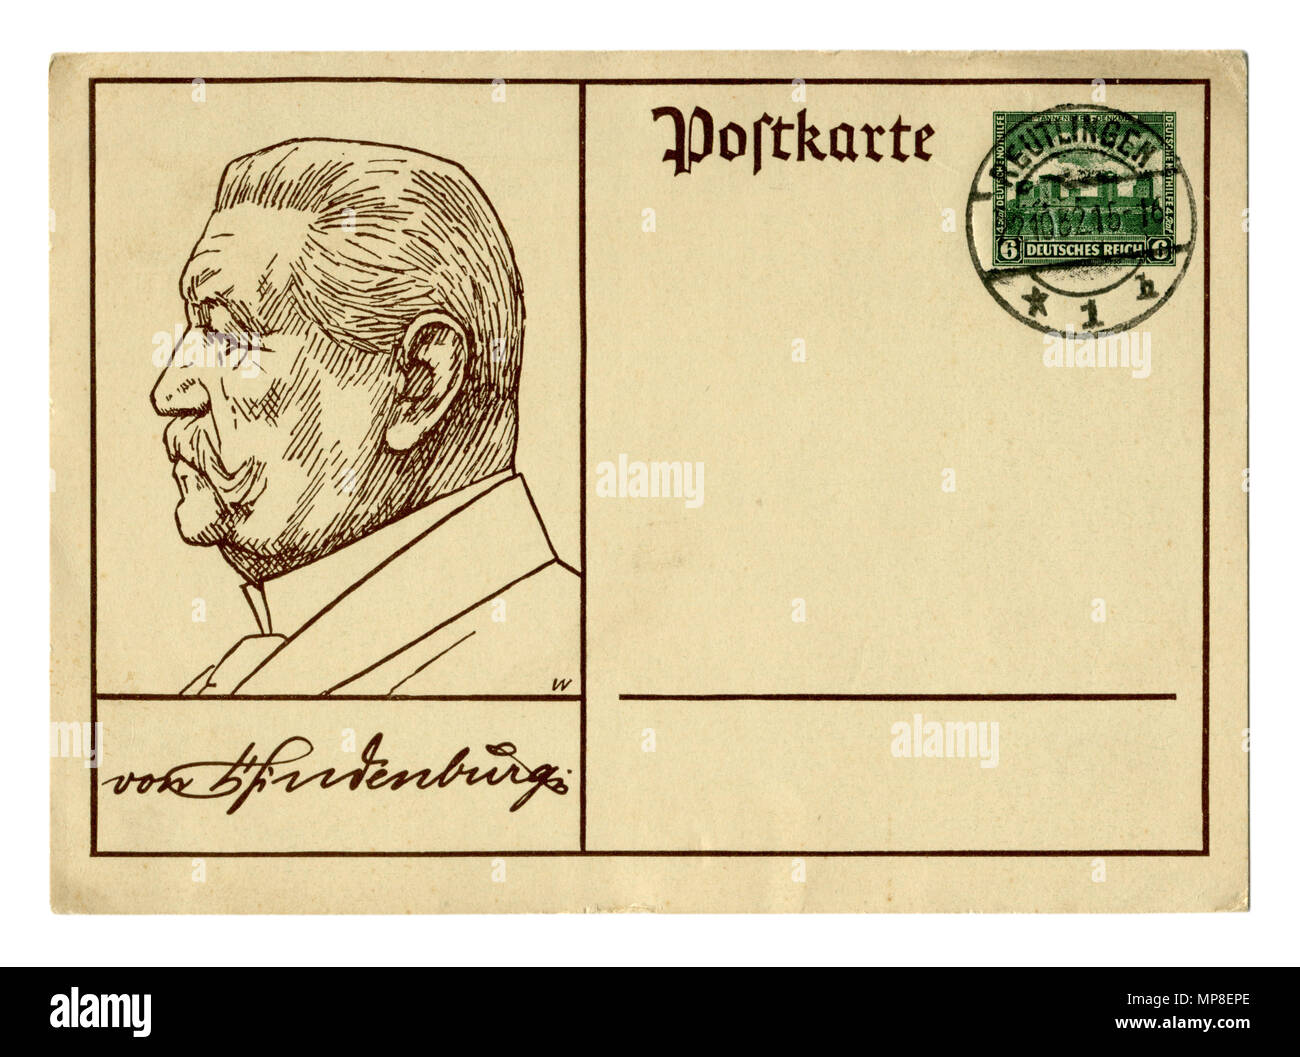 Antico tedesco cartolina postale / cartolina: dipinto di profilo di Paul von Hindenburg con il suo autografo, francobollo Tannenberg, farà fede il timbro postale,1932, Germania, Weimar Foto Stock